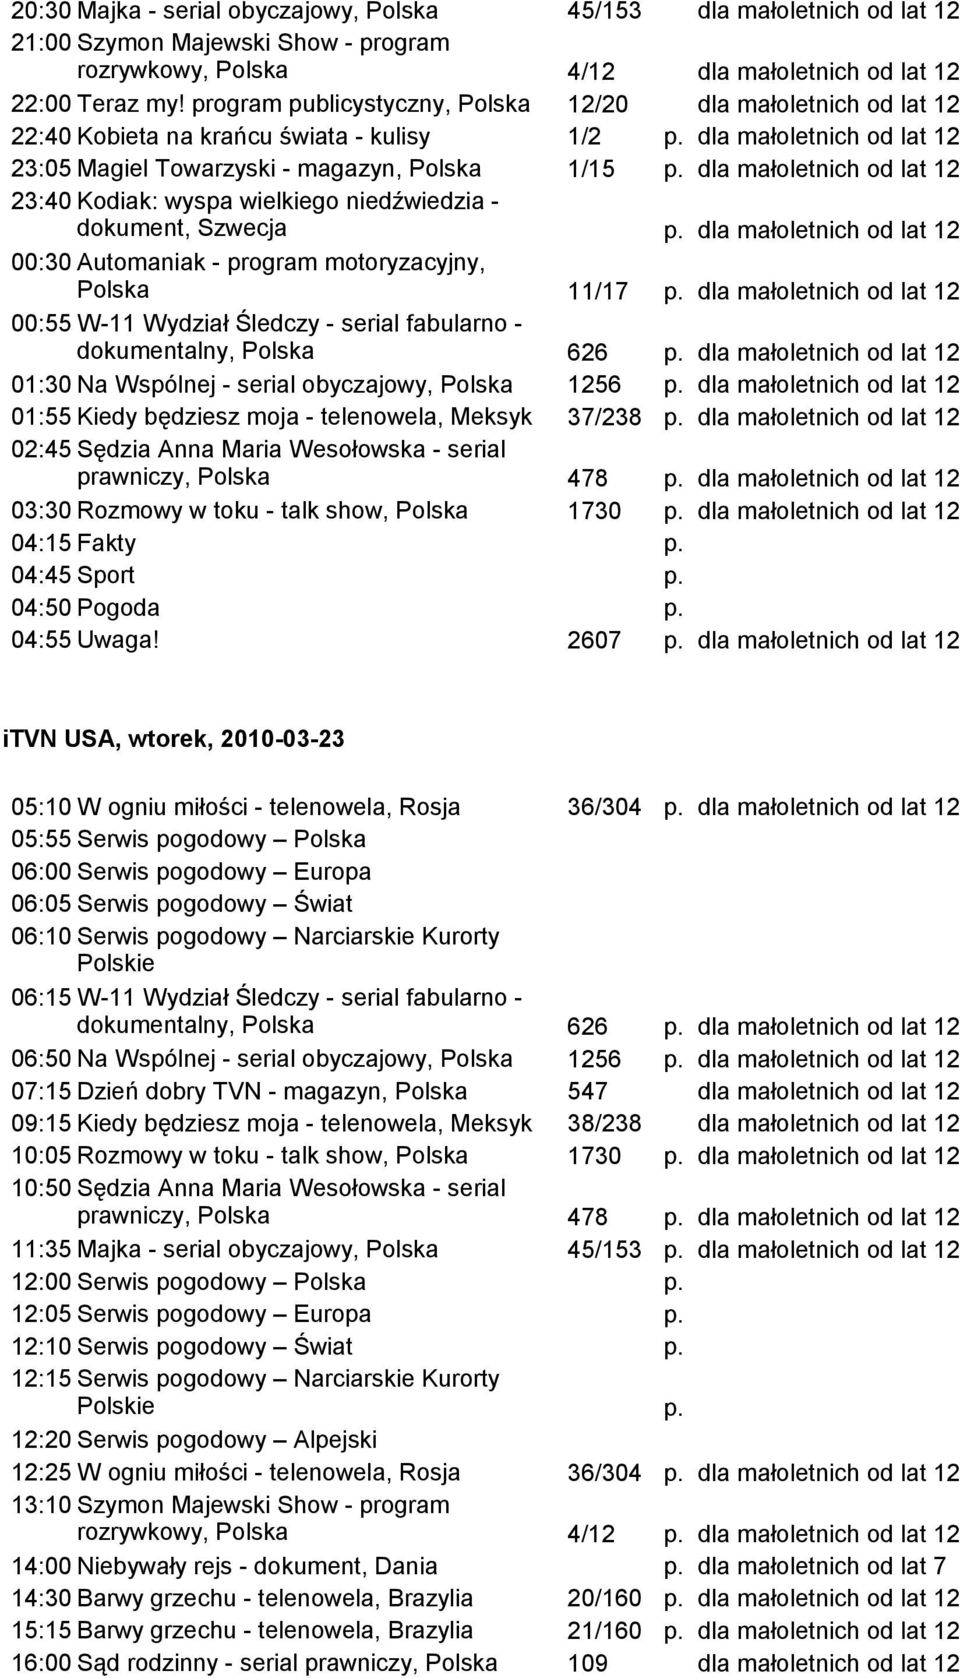 lat 12 23:40 Kodiak: wyspa wielkiego niedźwiedzia - dokument, Szwecja dla małoletnich od lat 12 00:30 Automaniak - program motoryzacyjny, Polska 11/17 dla małoletnich od lat 12 00:55 W-11 Wydział